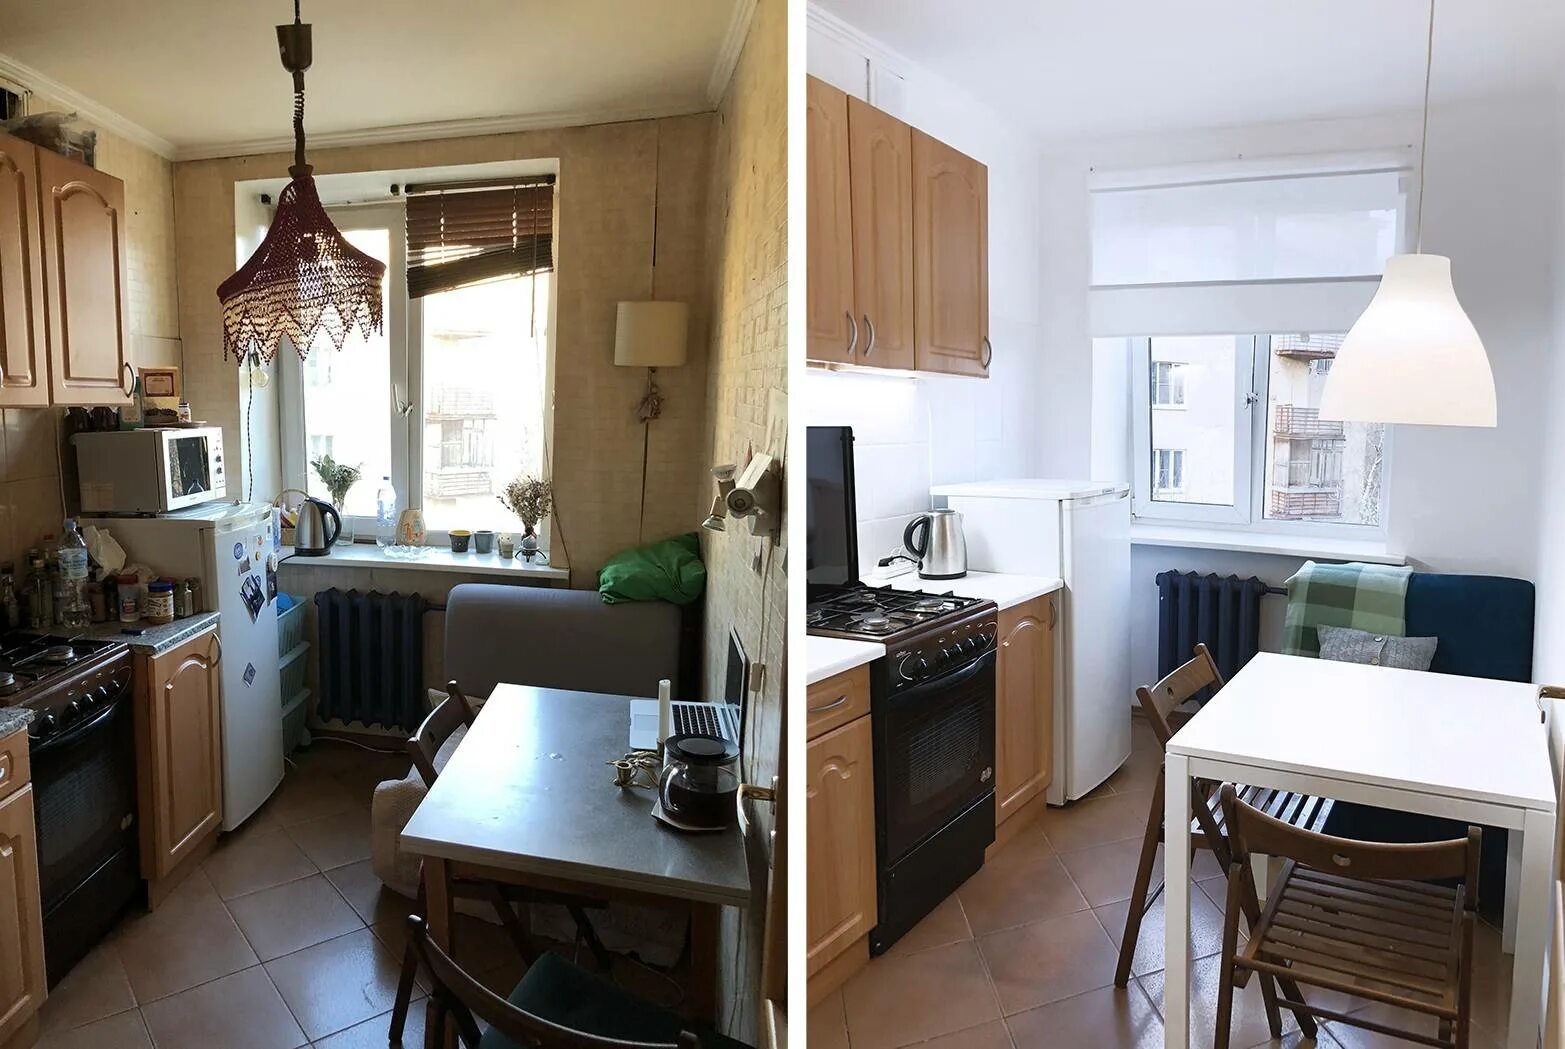 Хоум стейджинг в хрущевке. Хоум стейджинг квартиры до и после. Кухня в старой квартире. Переделка старой квартиры.